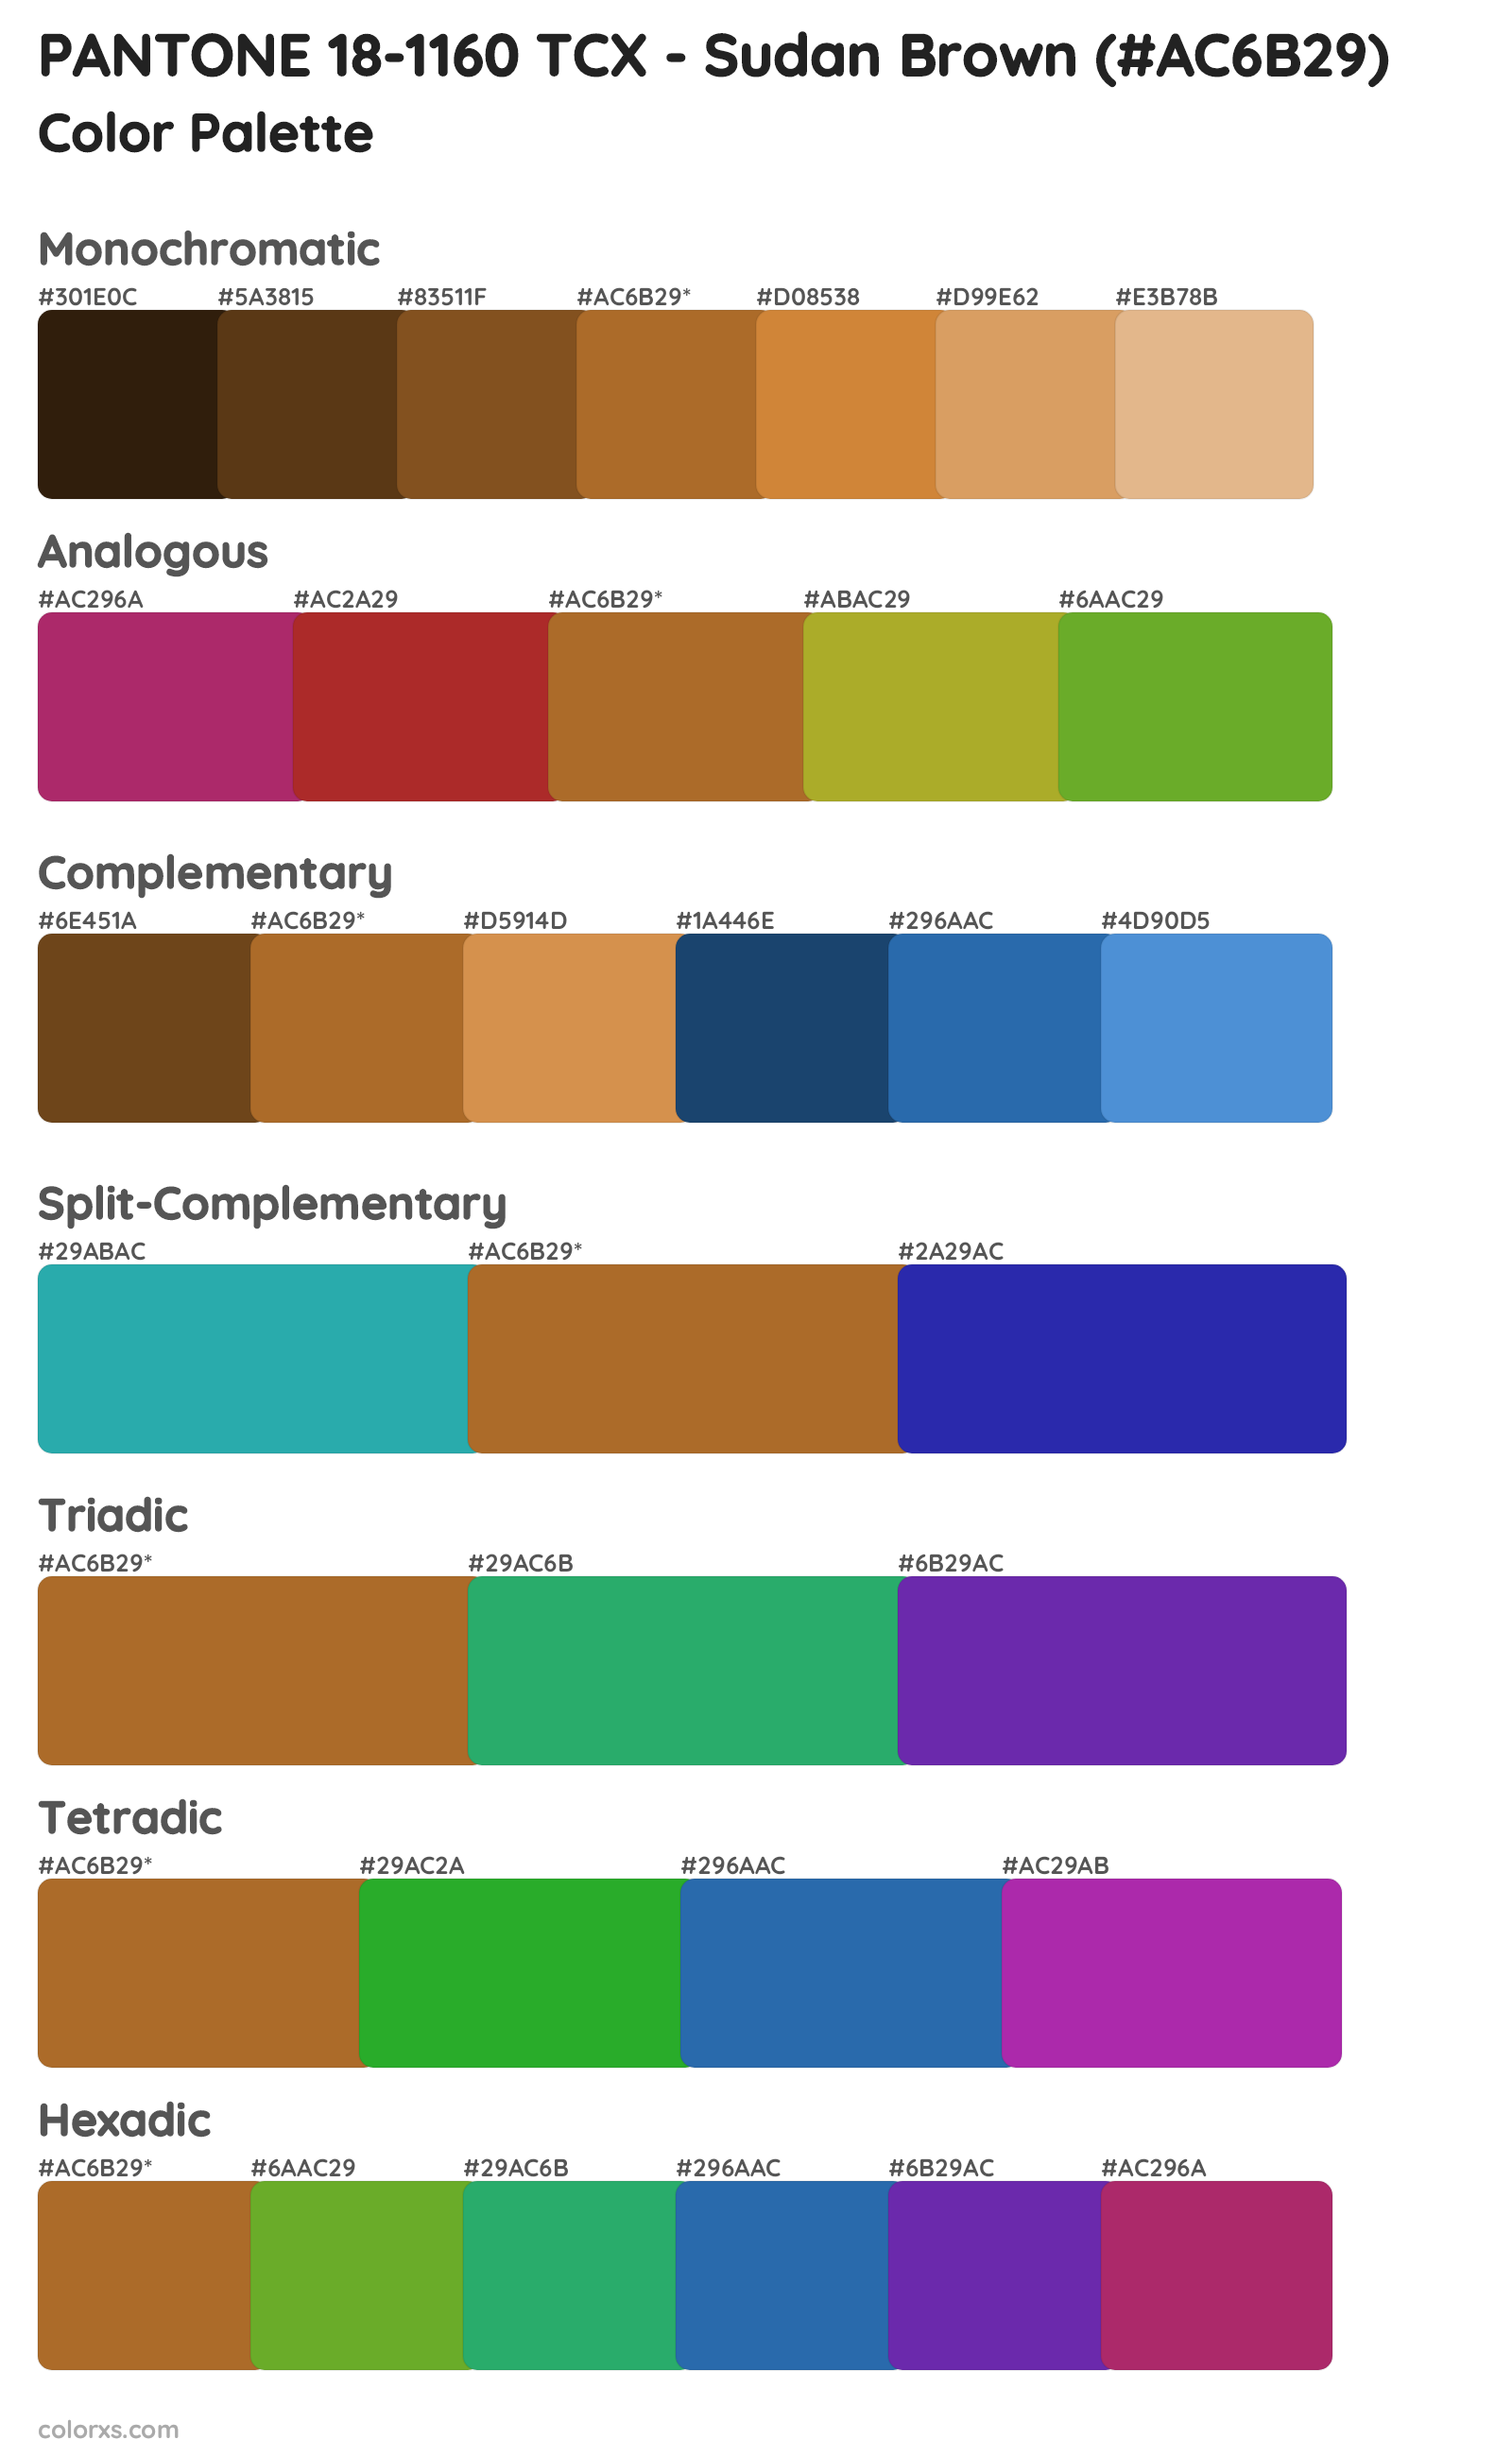 PANTONE 18-1160 TCX - Sudan Brown Color Scheme Palettes